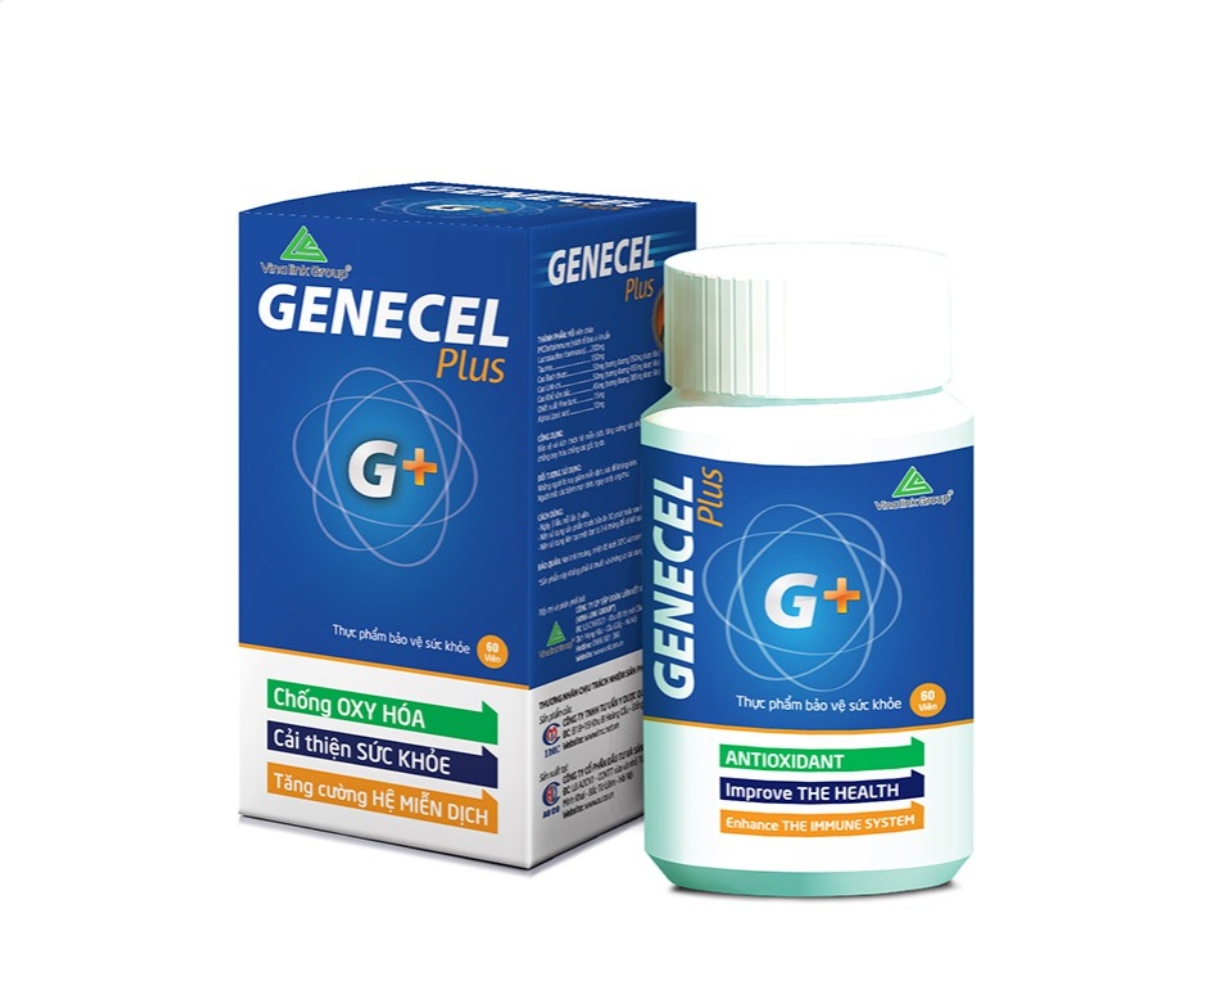 Genecel - Tăng cường hệ miễn dịch